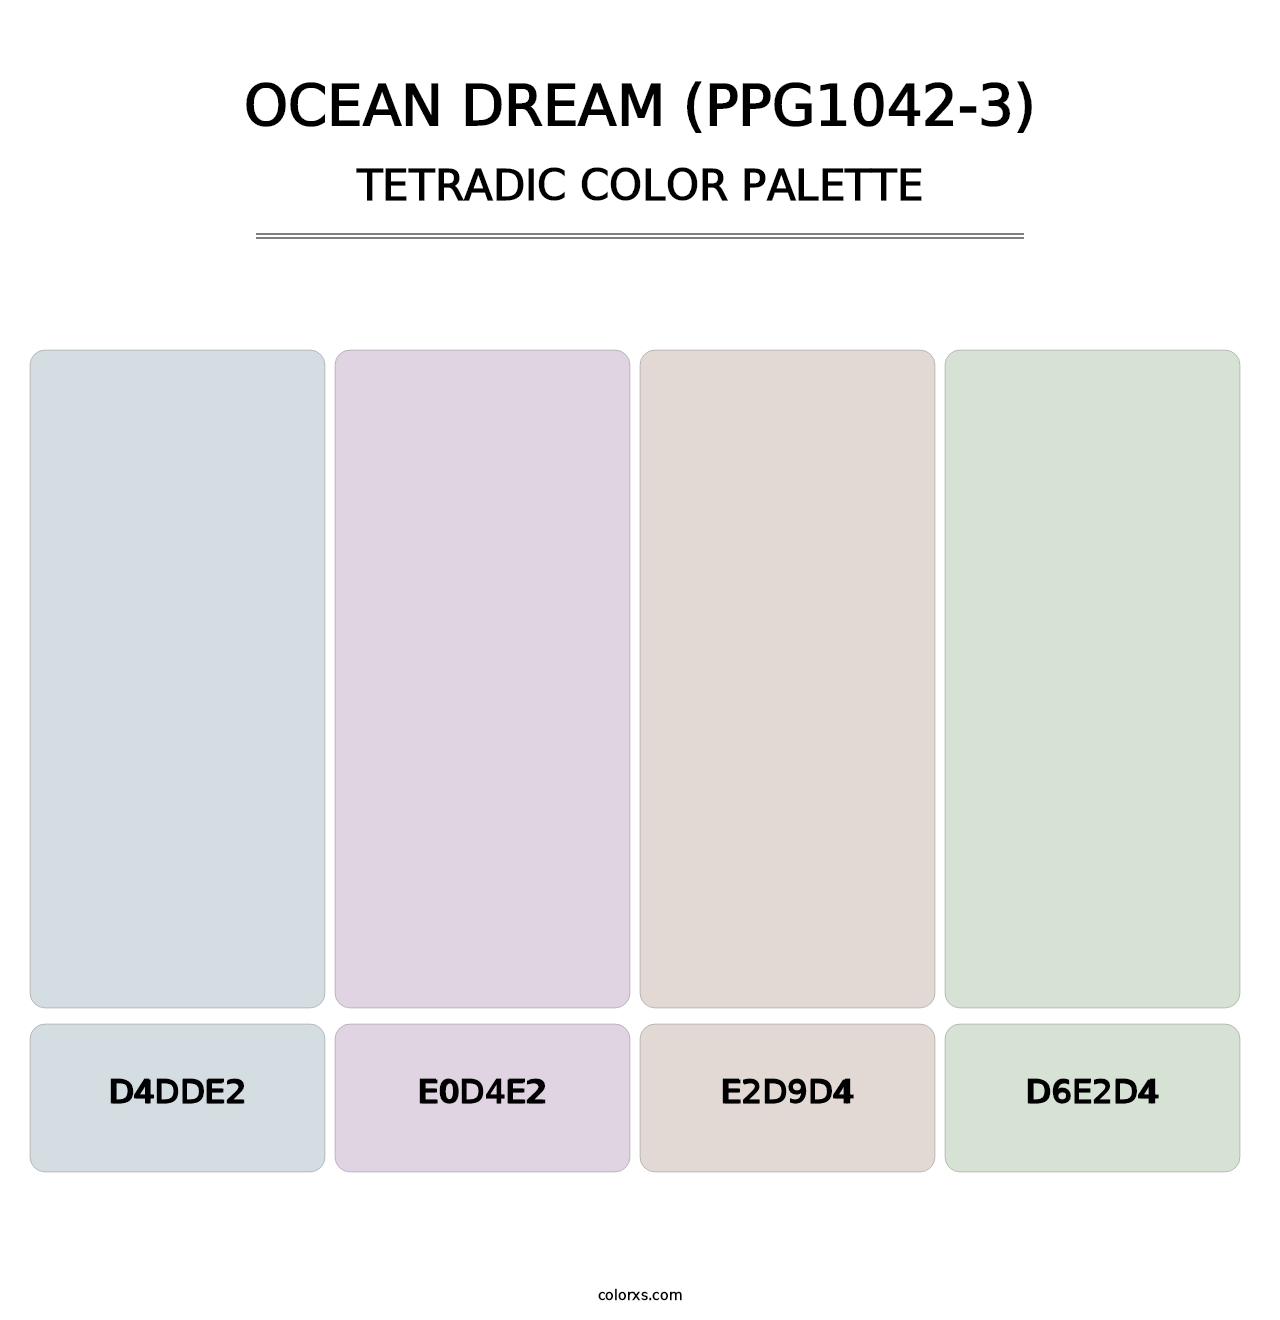 Ocean Dream (PPG1042-3) - Tetradic Color Palette